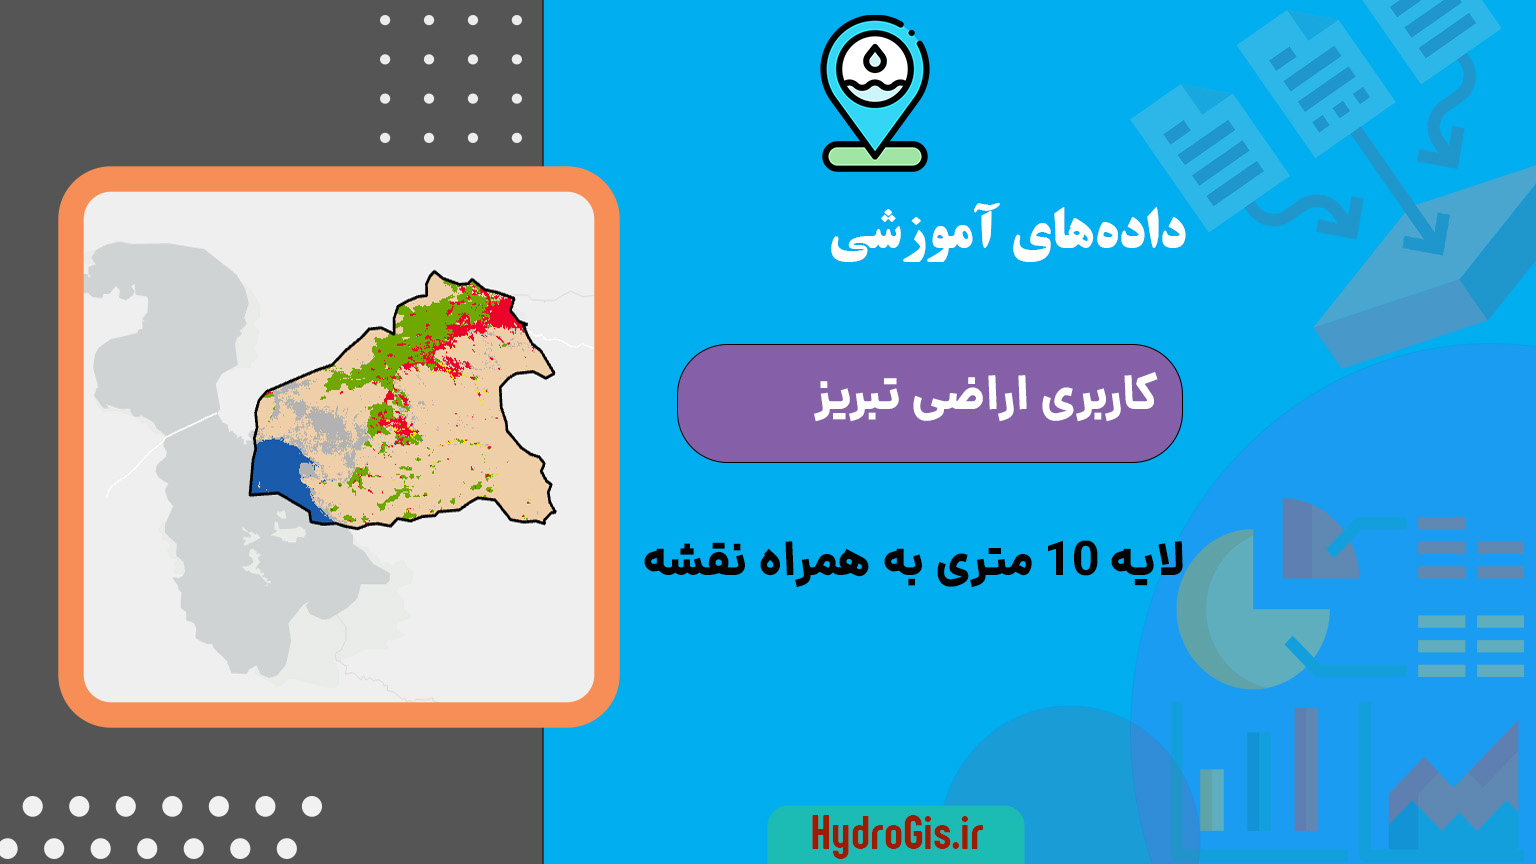 نقشه کاربری اراضی تبریز